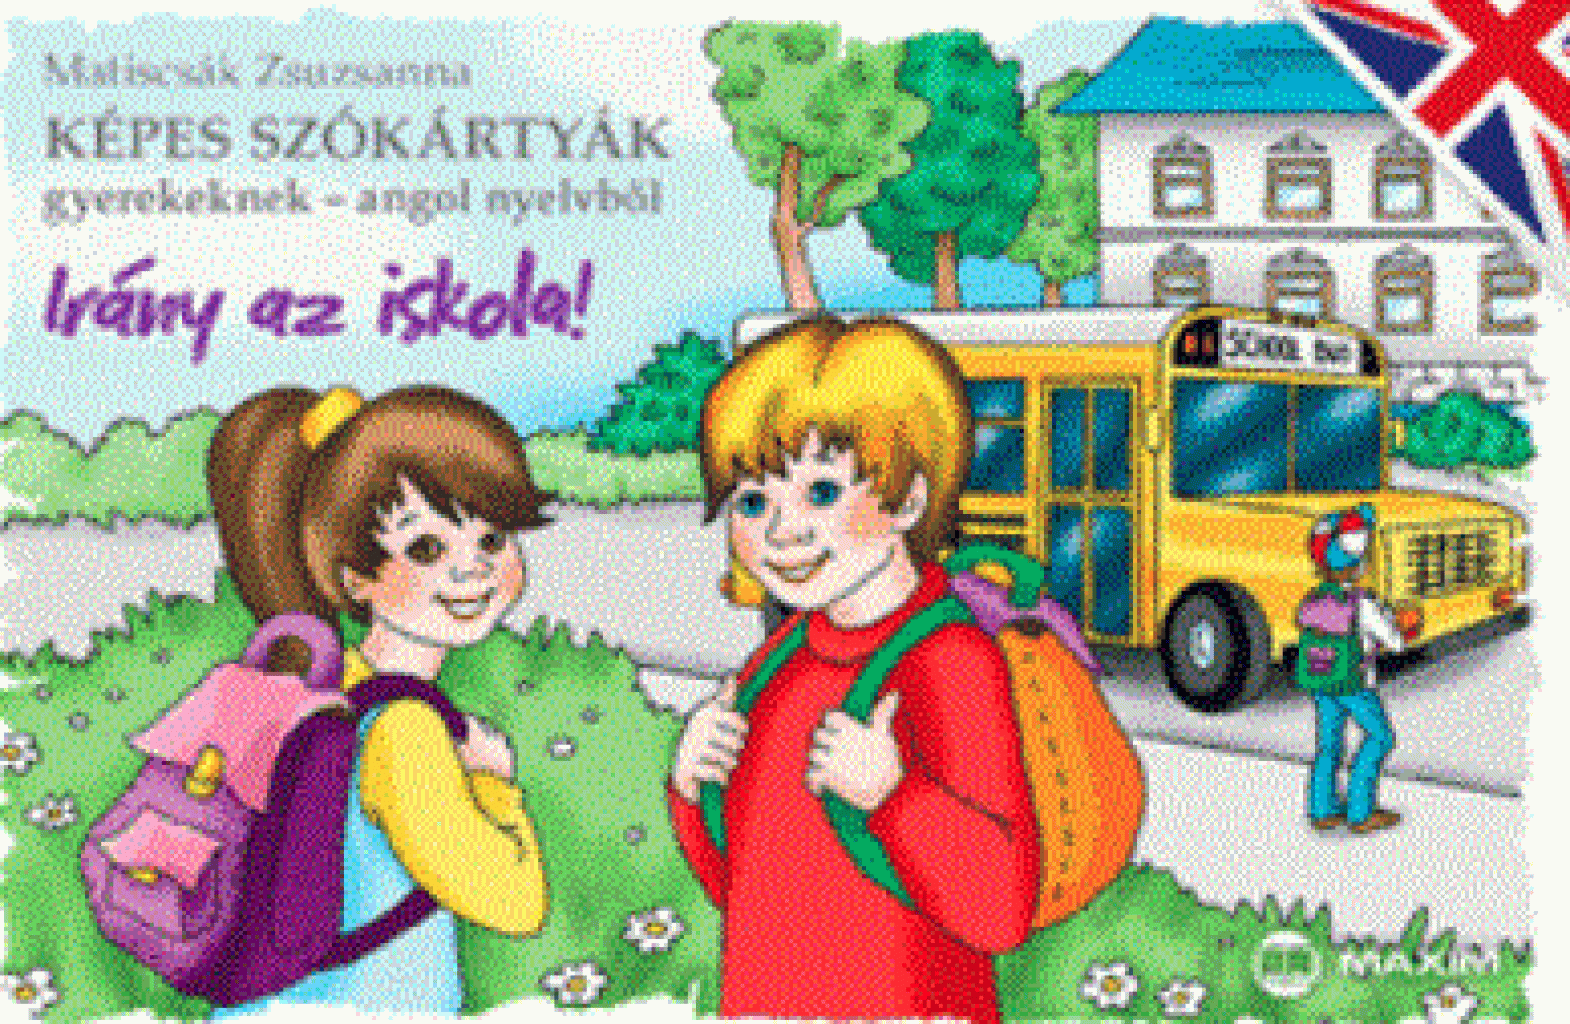 Képes szókártyák gyerekeknek angol nyelvből - Irány az iskola!